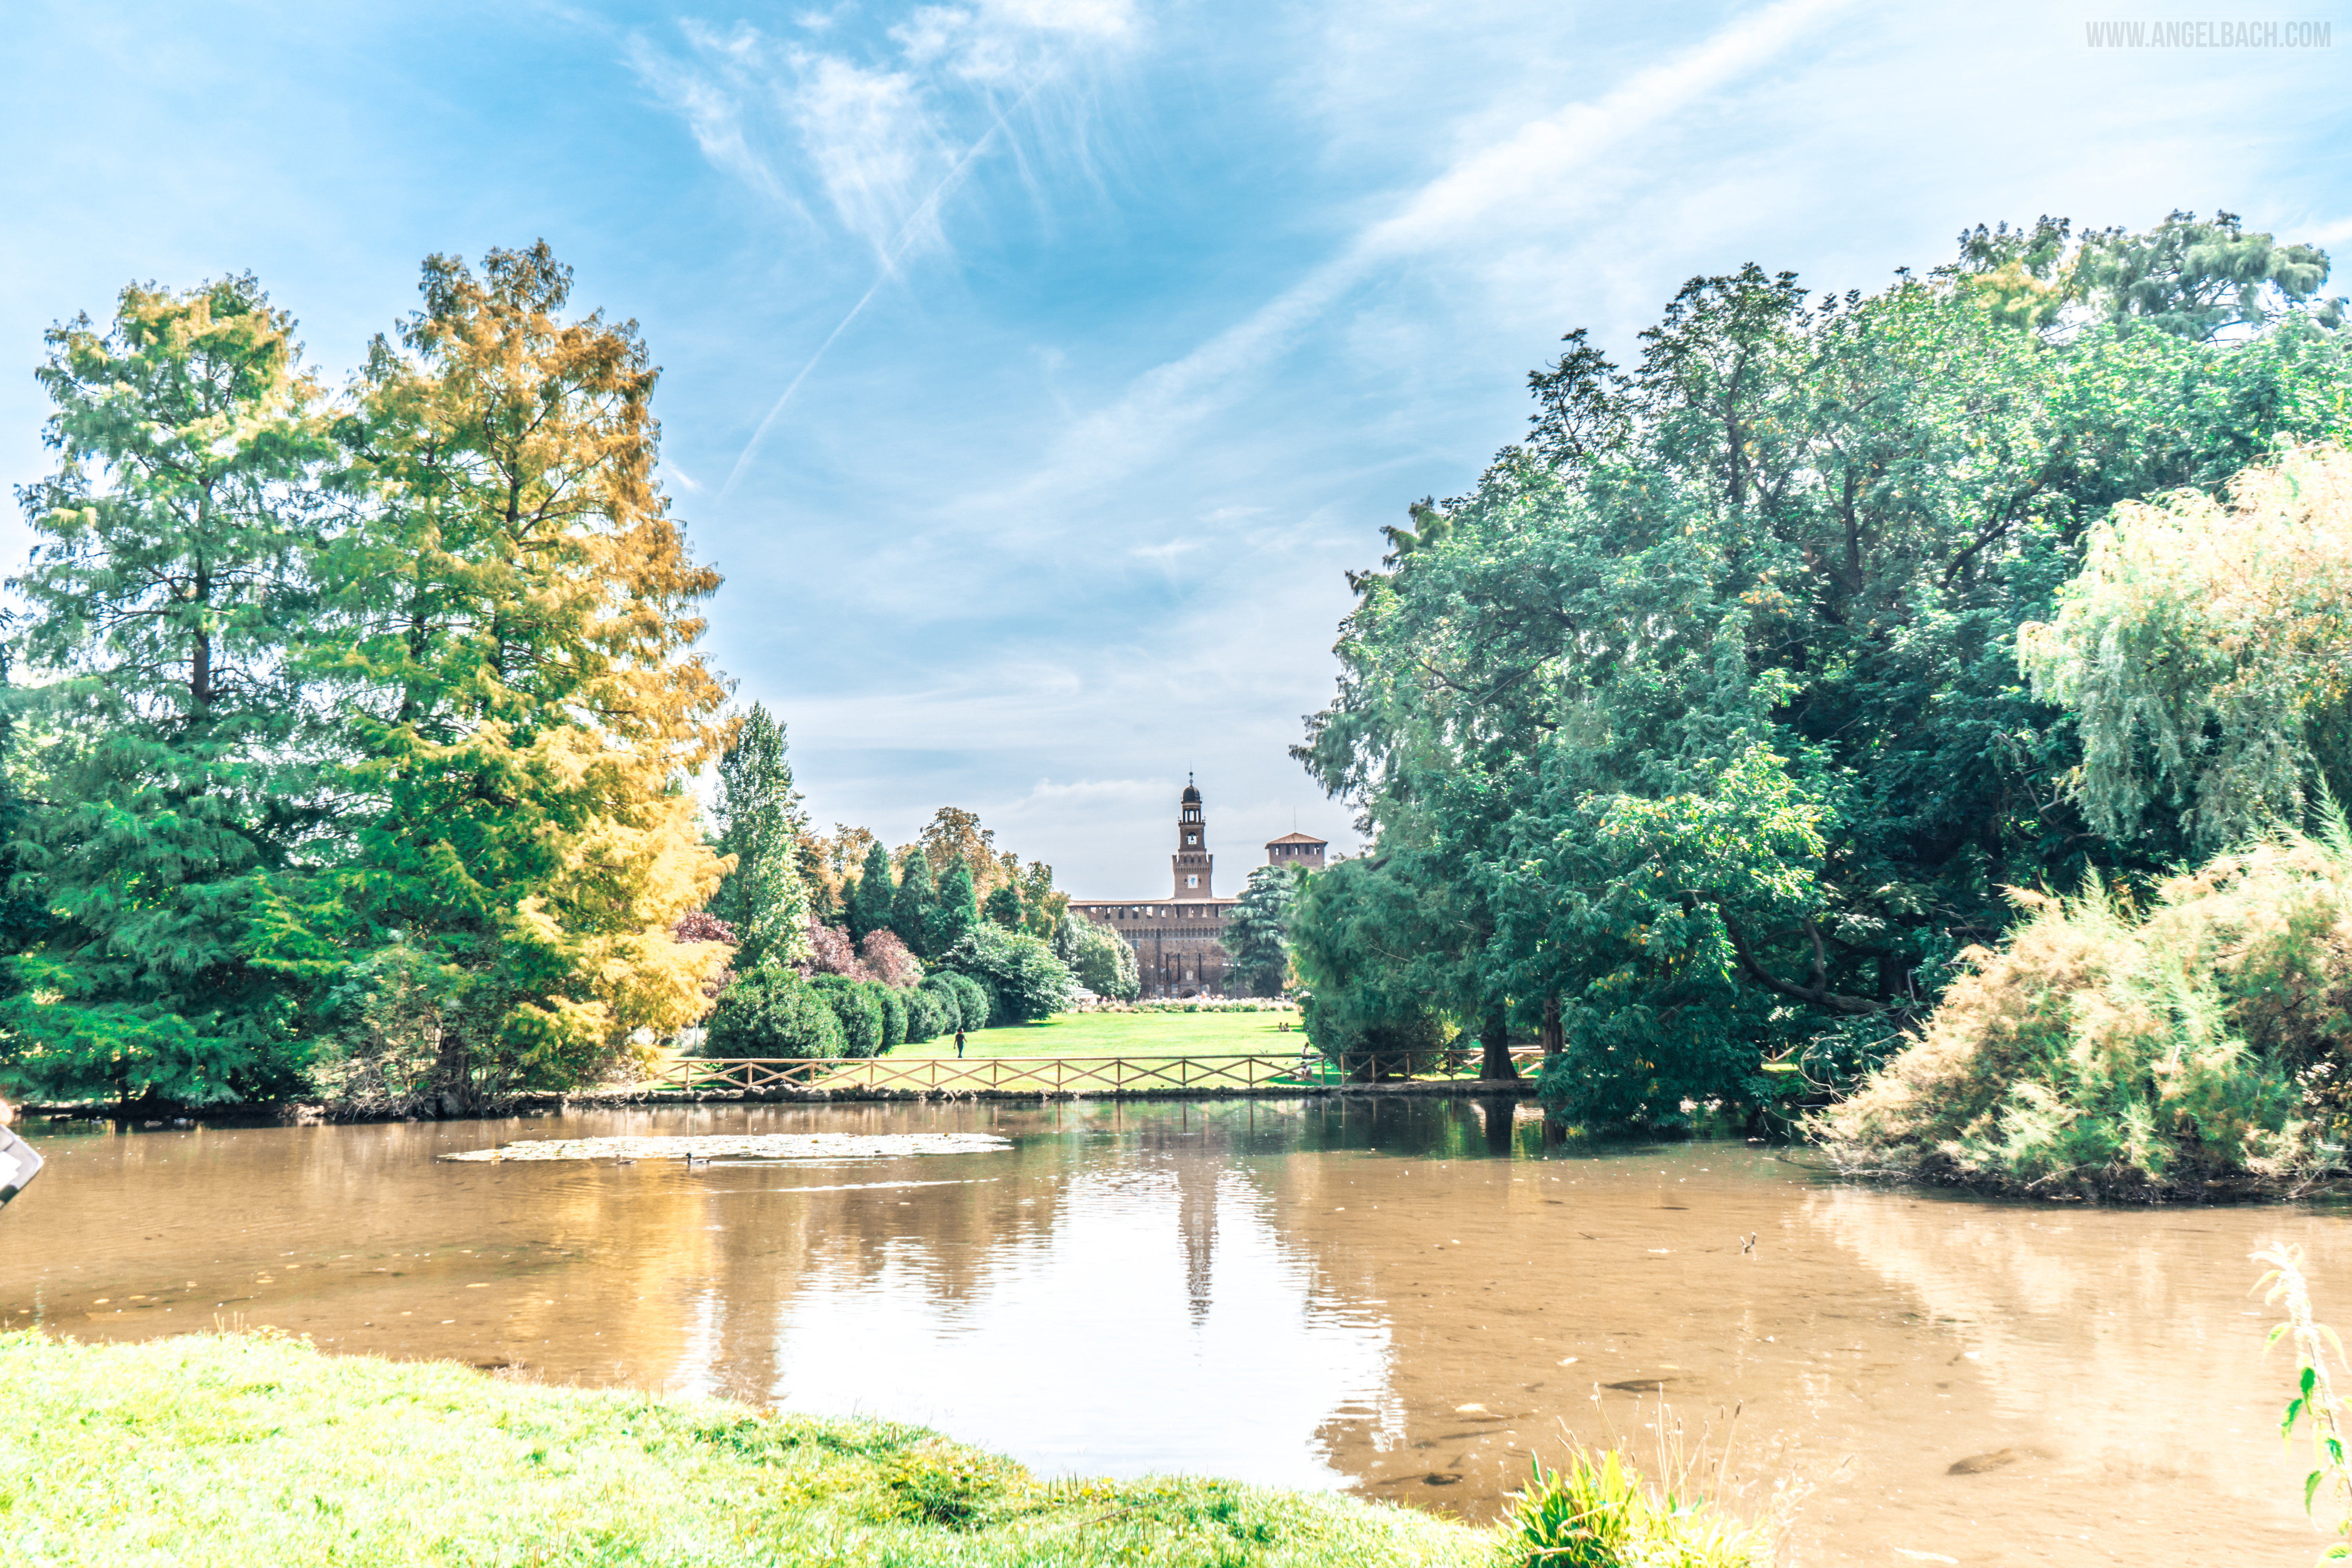 Milano, Park, Palace, pond, nature, reflection, trees, Italy